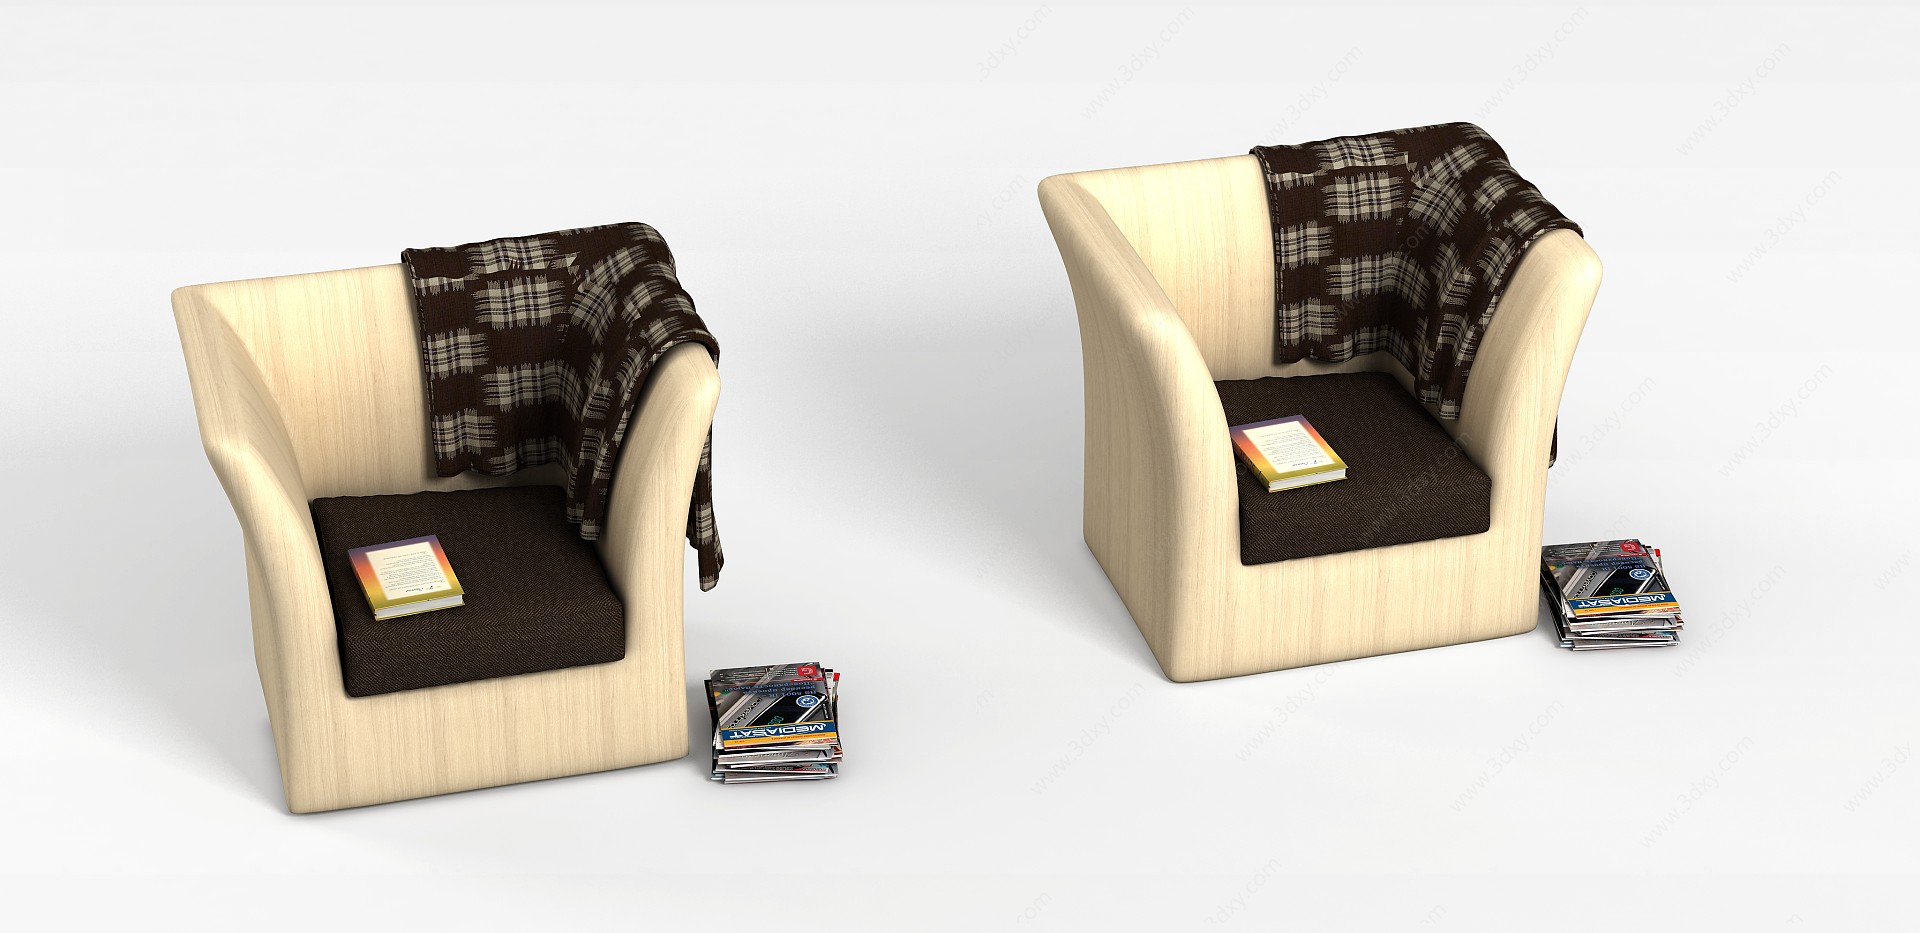 客厅沙发椅子3D模型